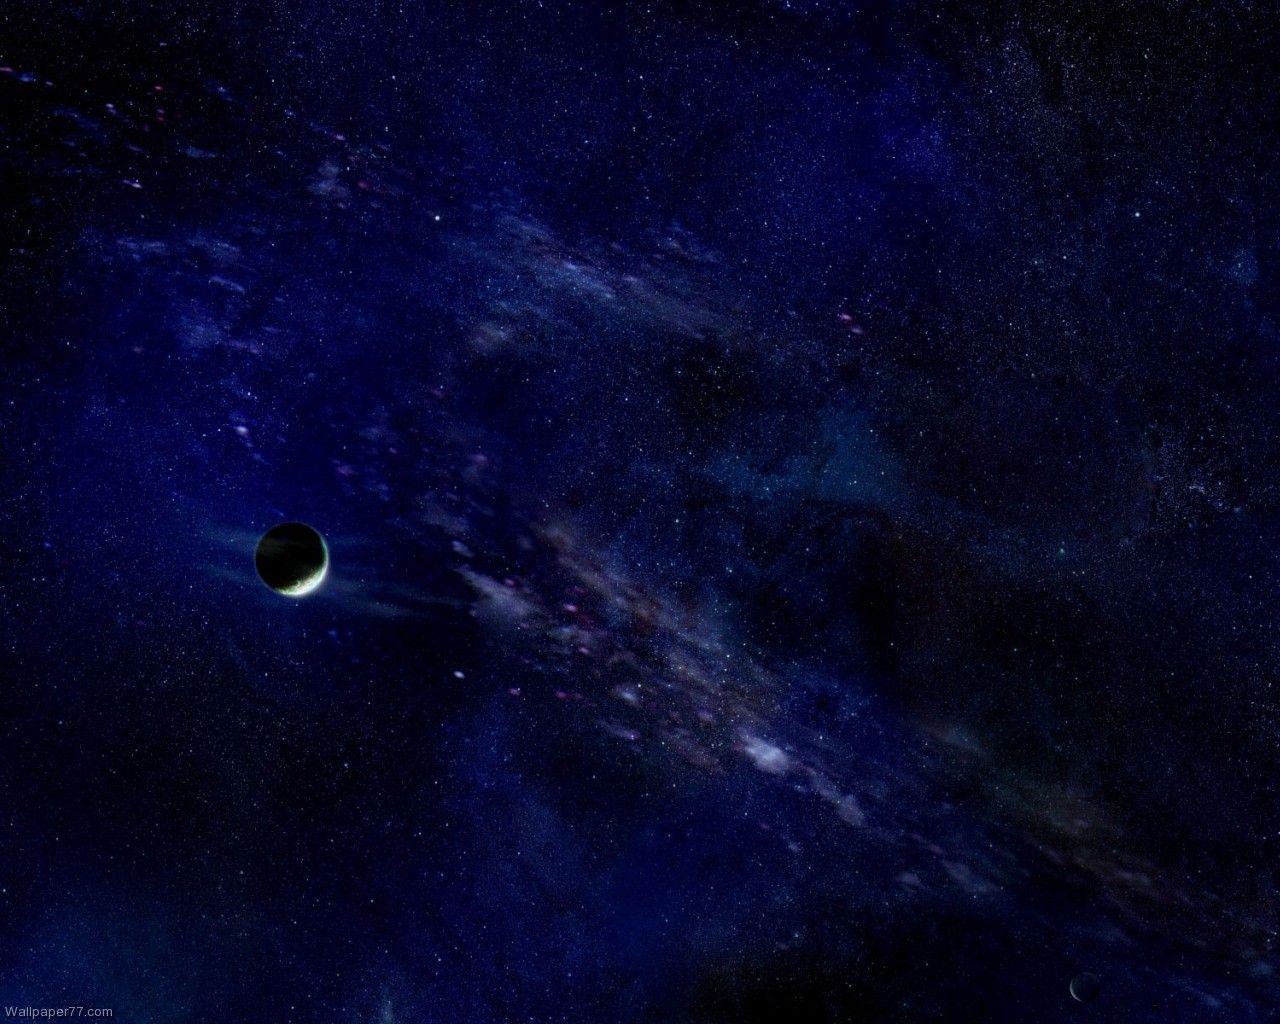 Deep Blue Space, 1280x1024 pixels, Wallpaper tagged Galaxy